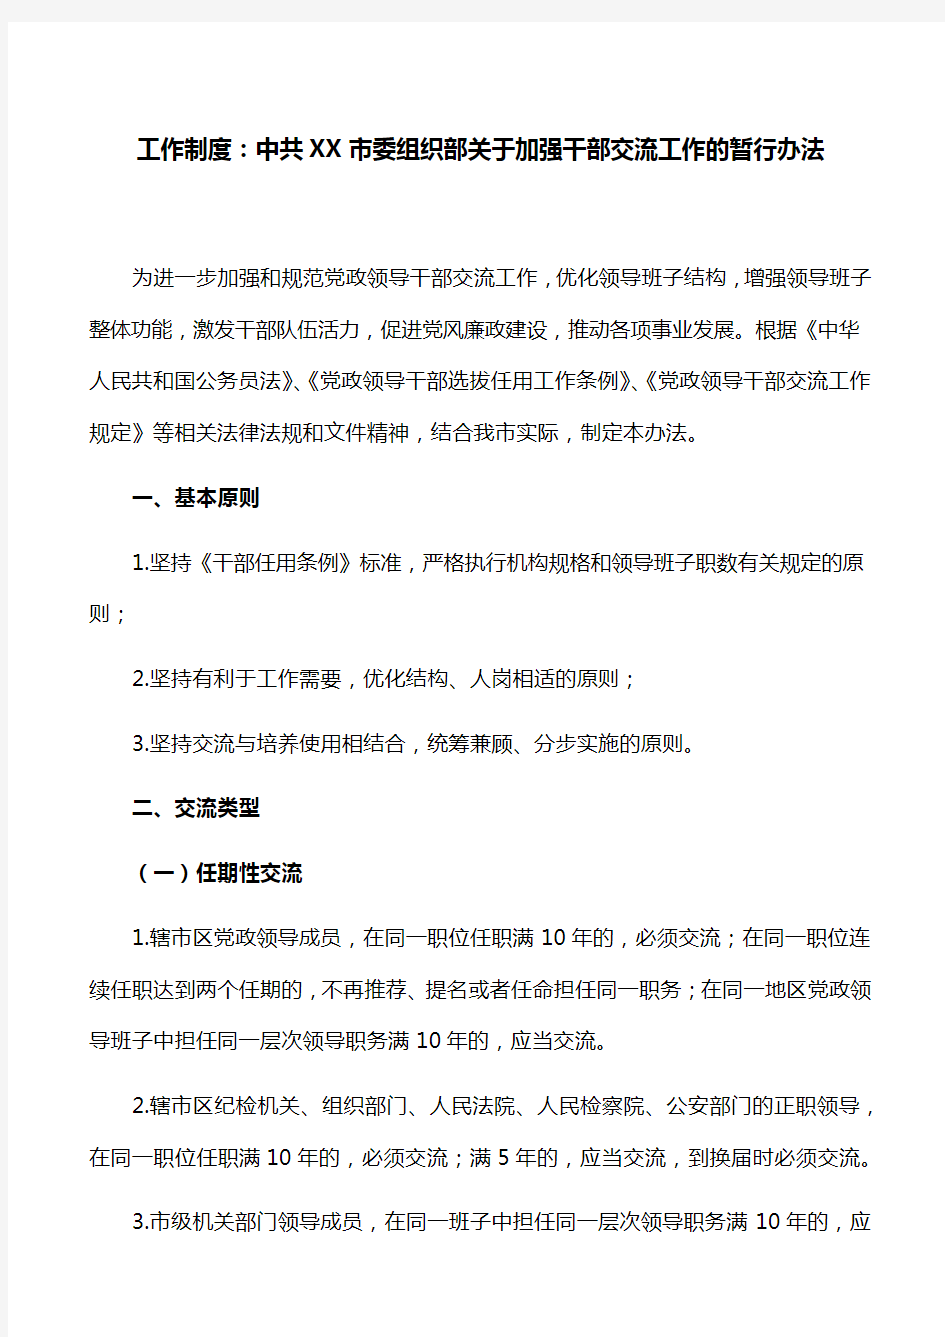 工作制度：中共XX市委组织部关于加强干部交流工作的暂行办法